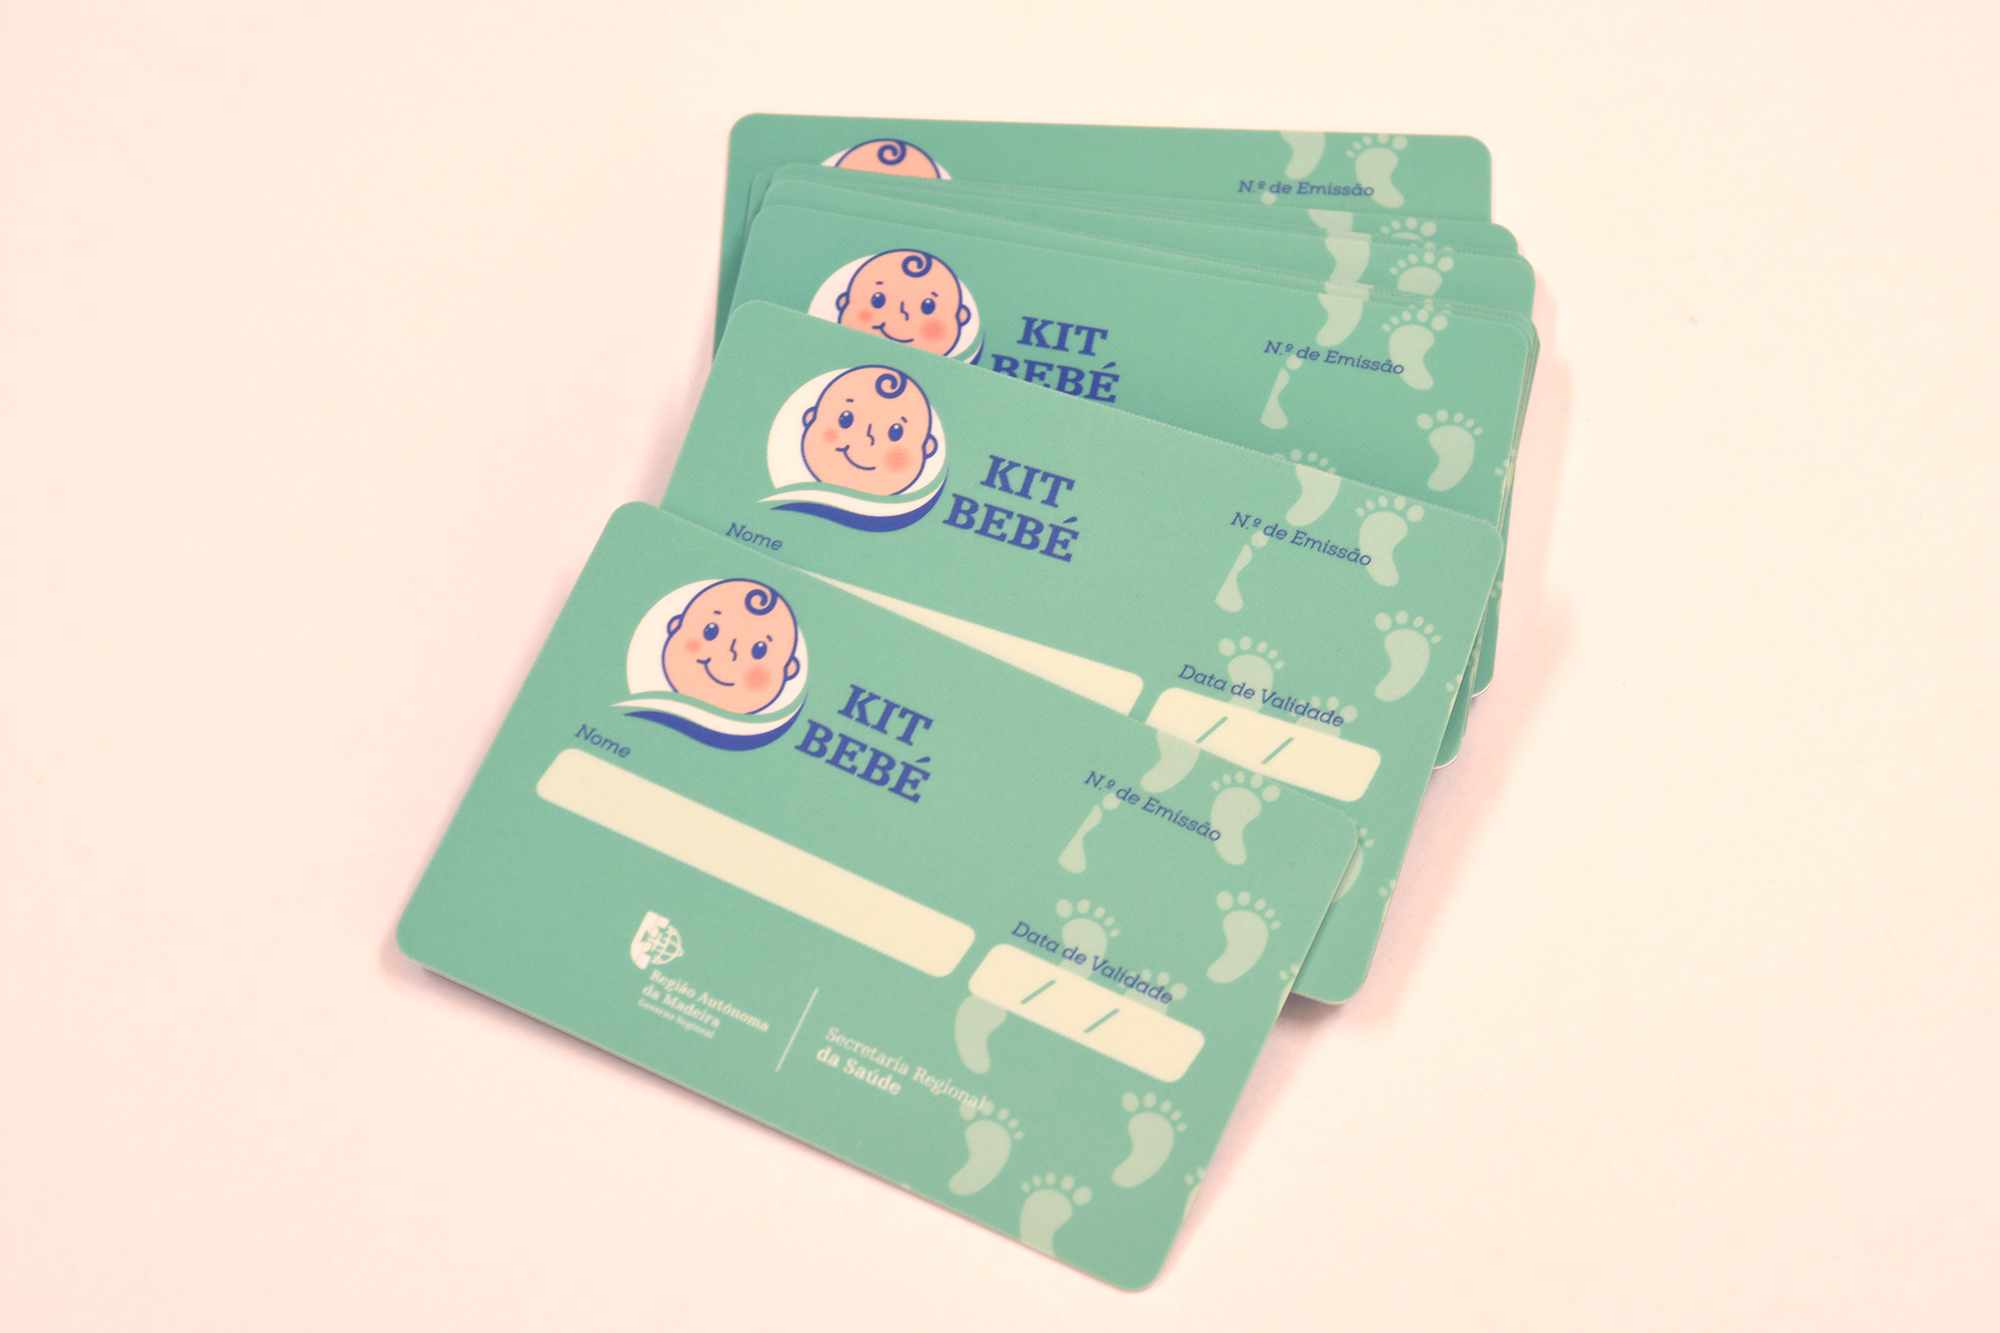 Secretário da Saúde entregou o 1º cartão "Kit Bebé" no valor de 400 euros